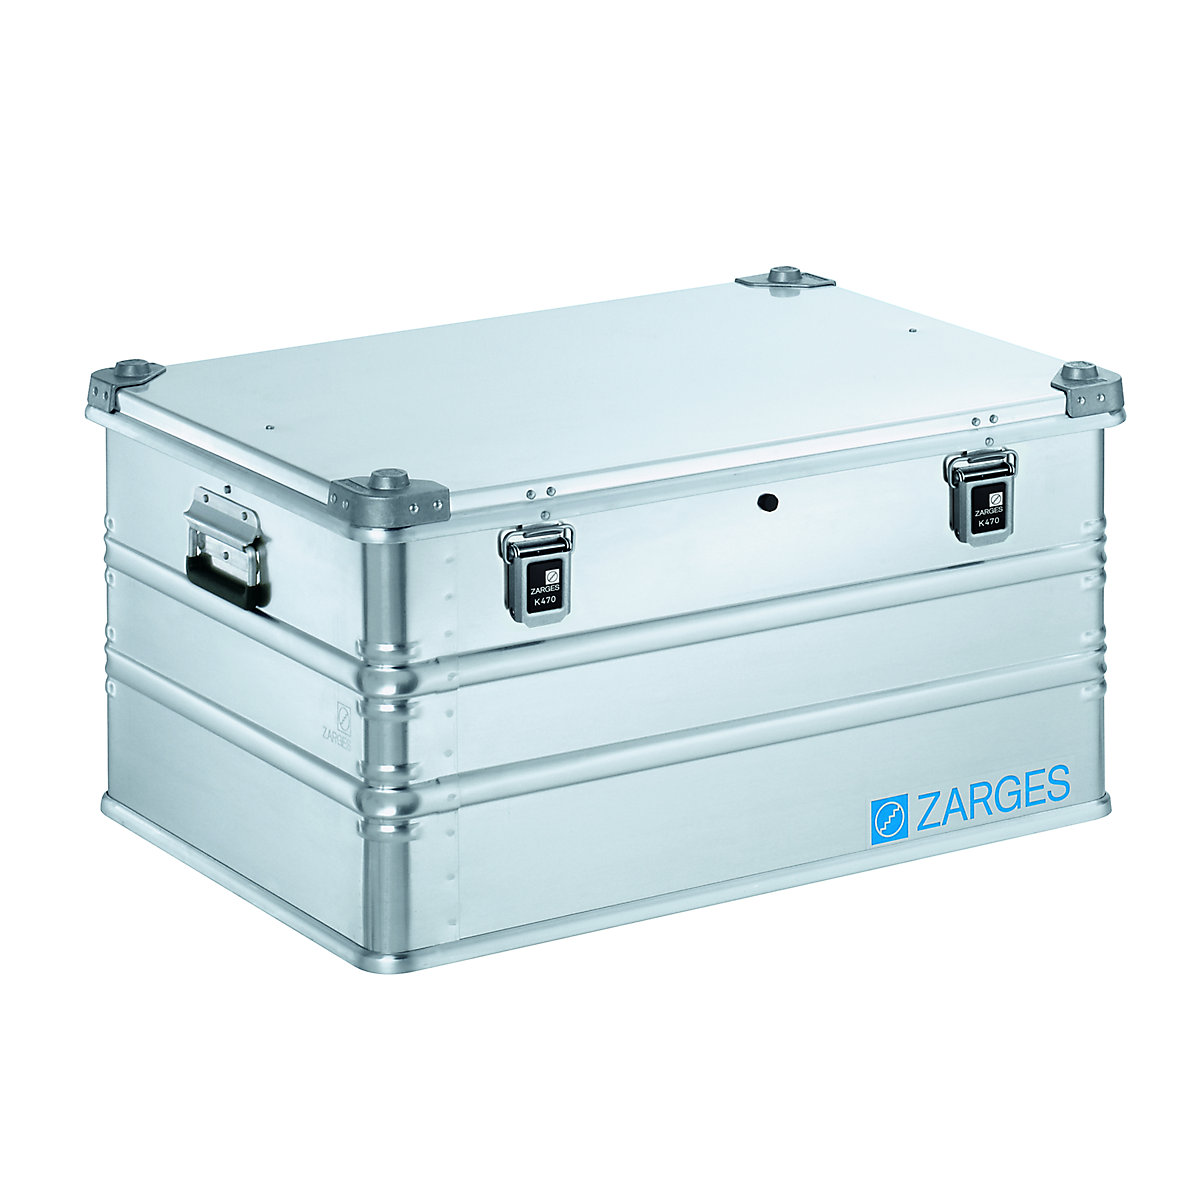 IP65 aluminium universal container – ZARGES